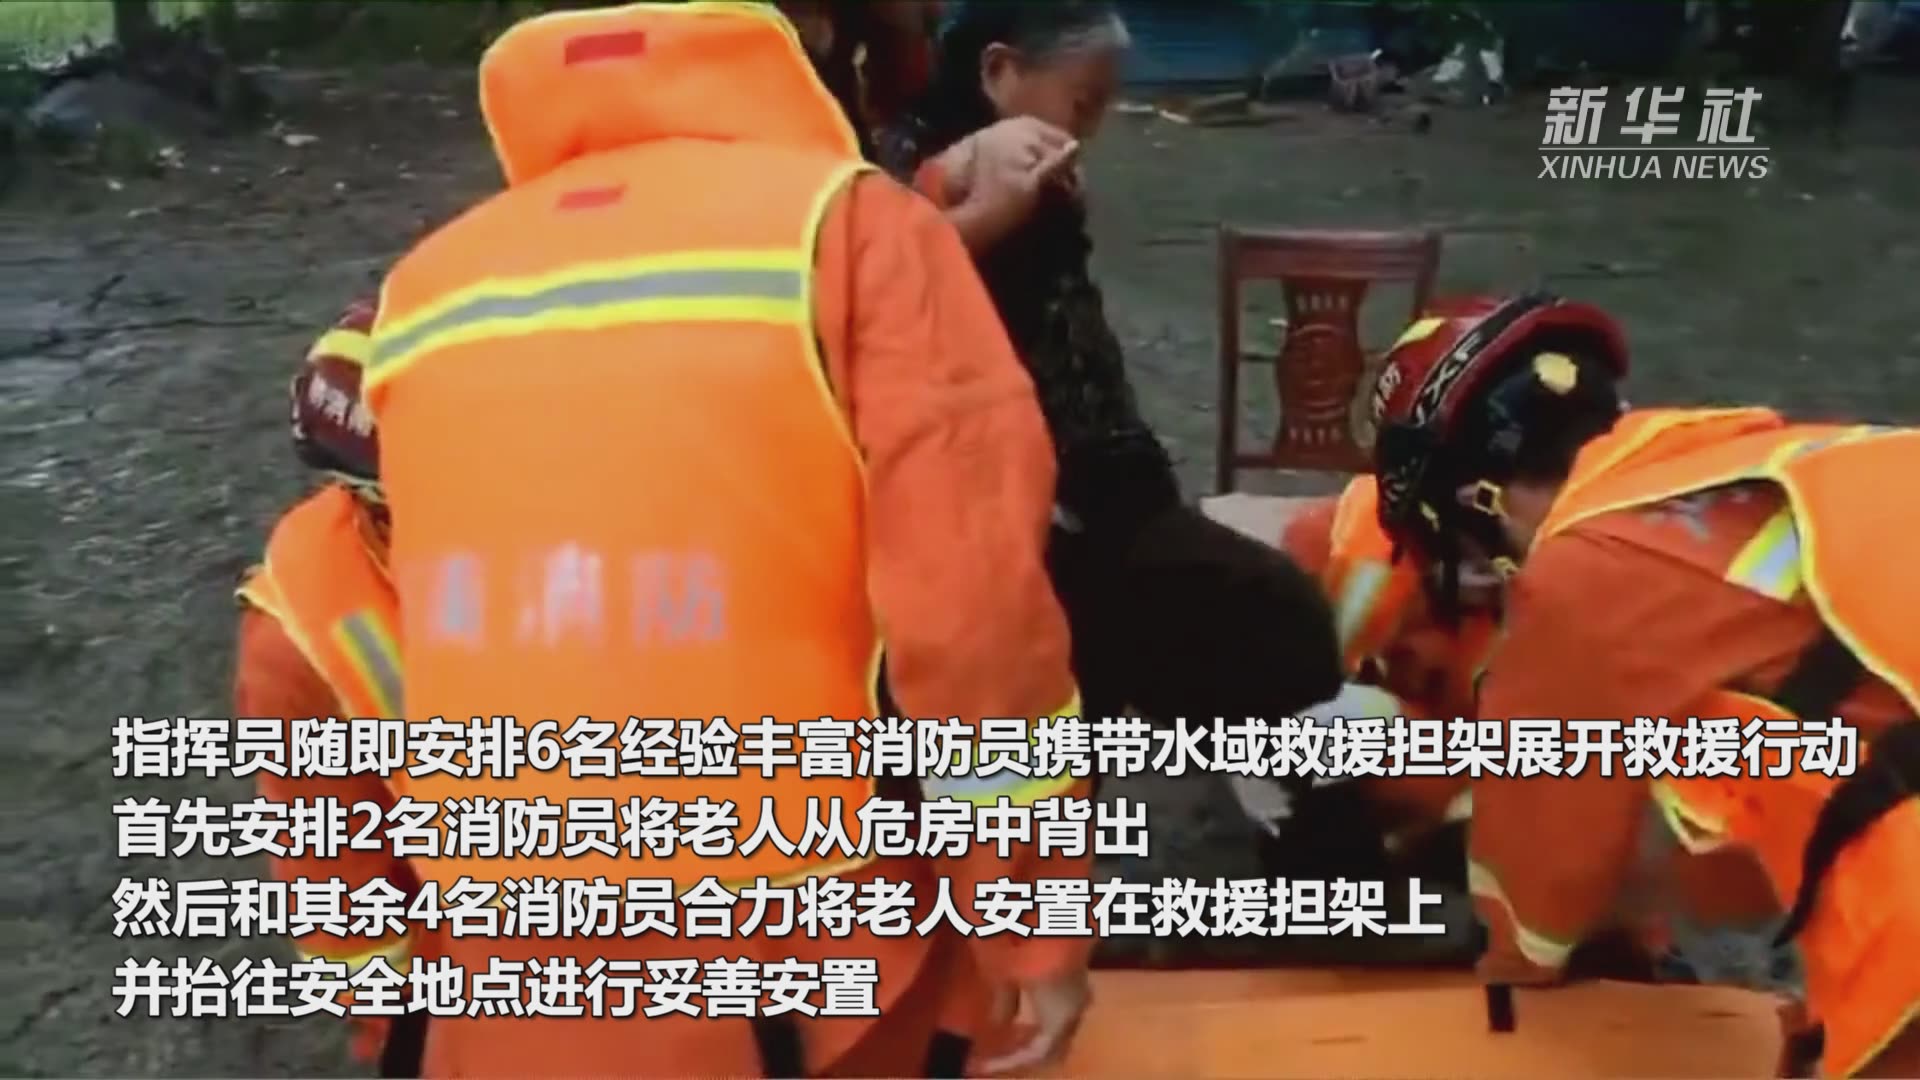 郑州地铁被救者自述死里逃生 当时具体发生了啥?详情曝光_苏州都市网